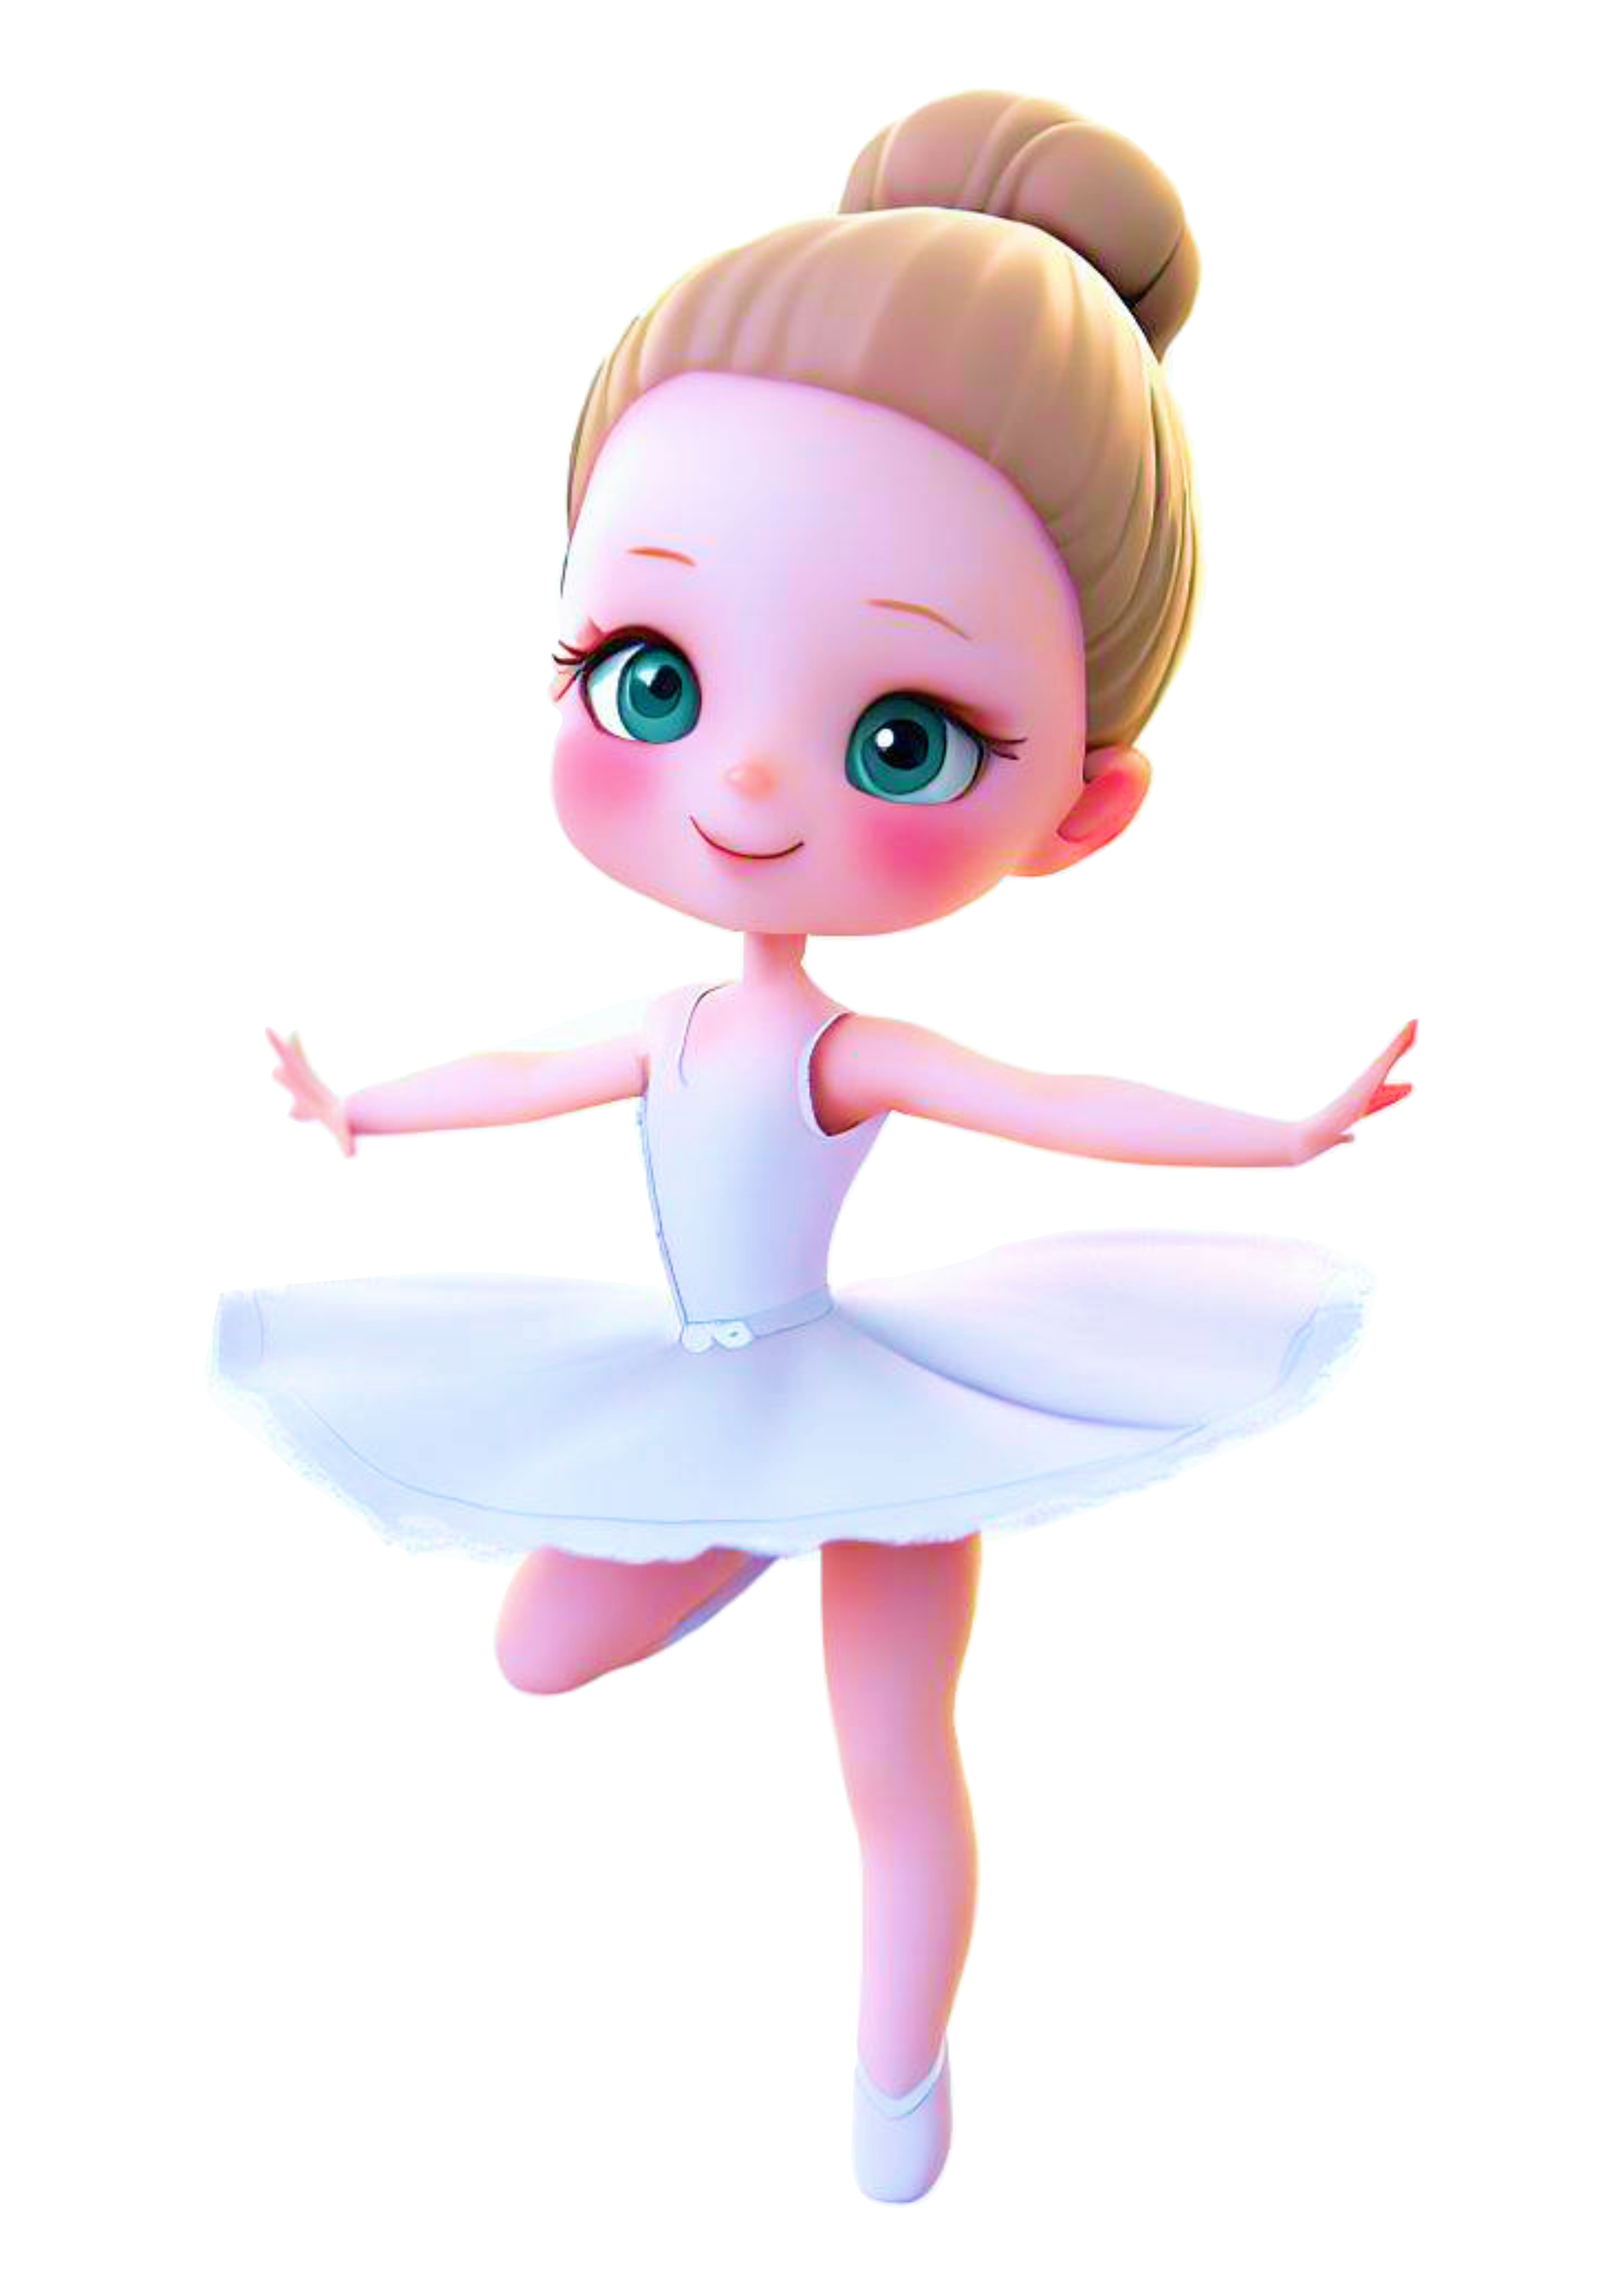 Bailarina bonequinha computação gráfica animação CGI vestido branquinho cute fofinho toy imagem sem fundo png